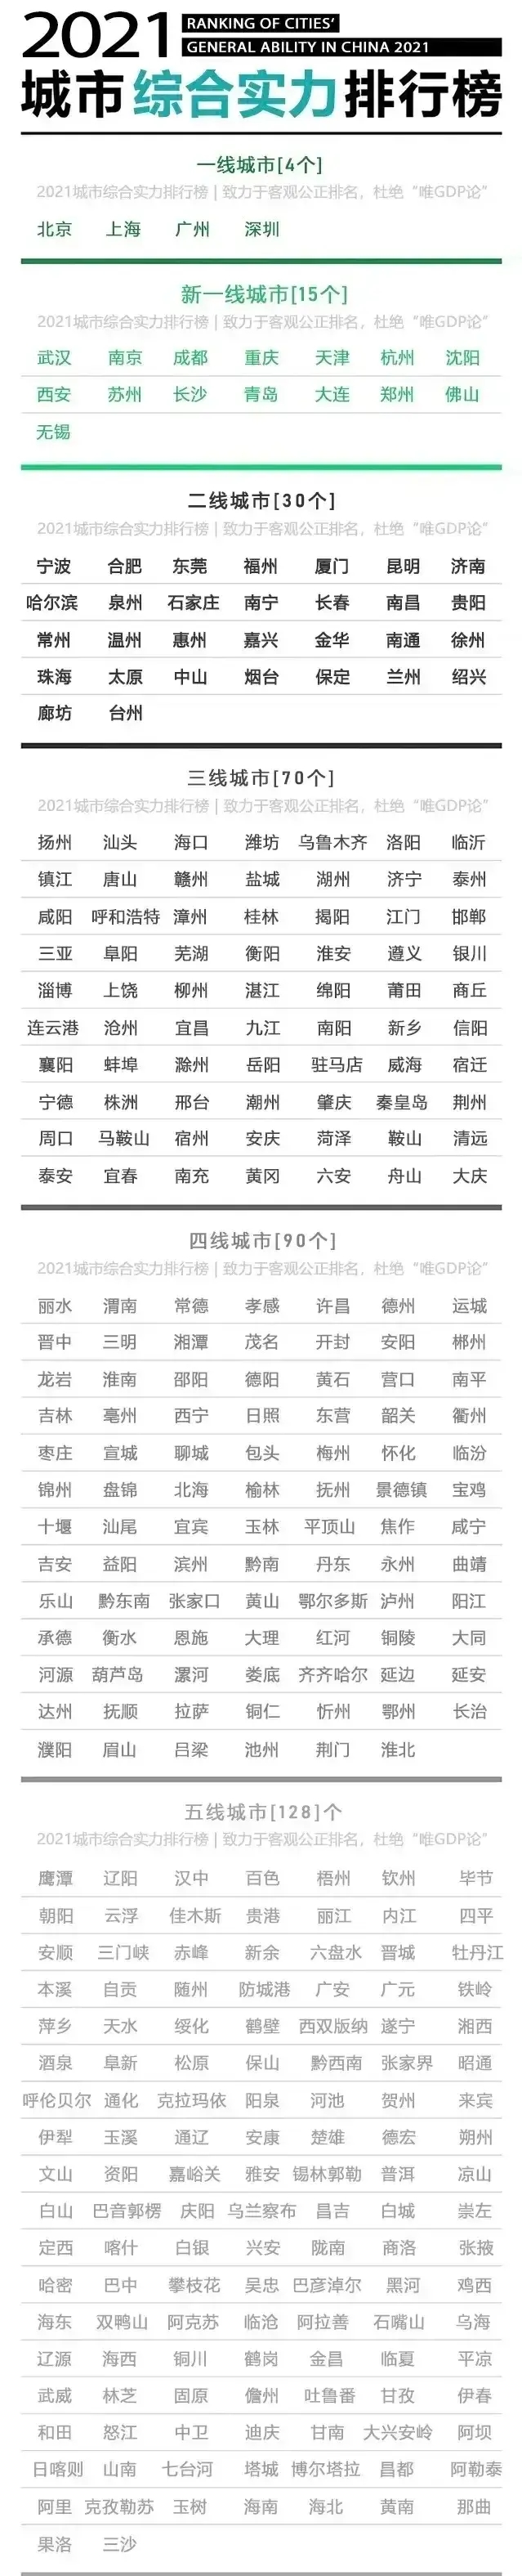 湖南省市区排名图片